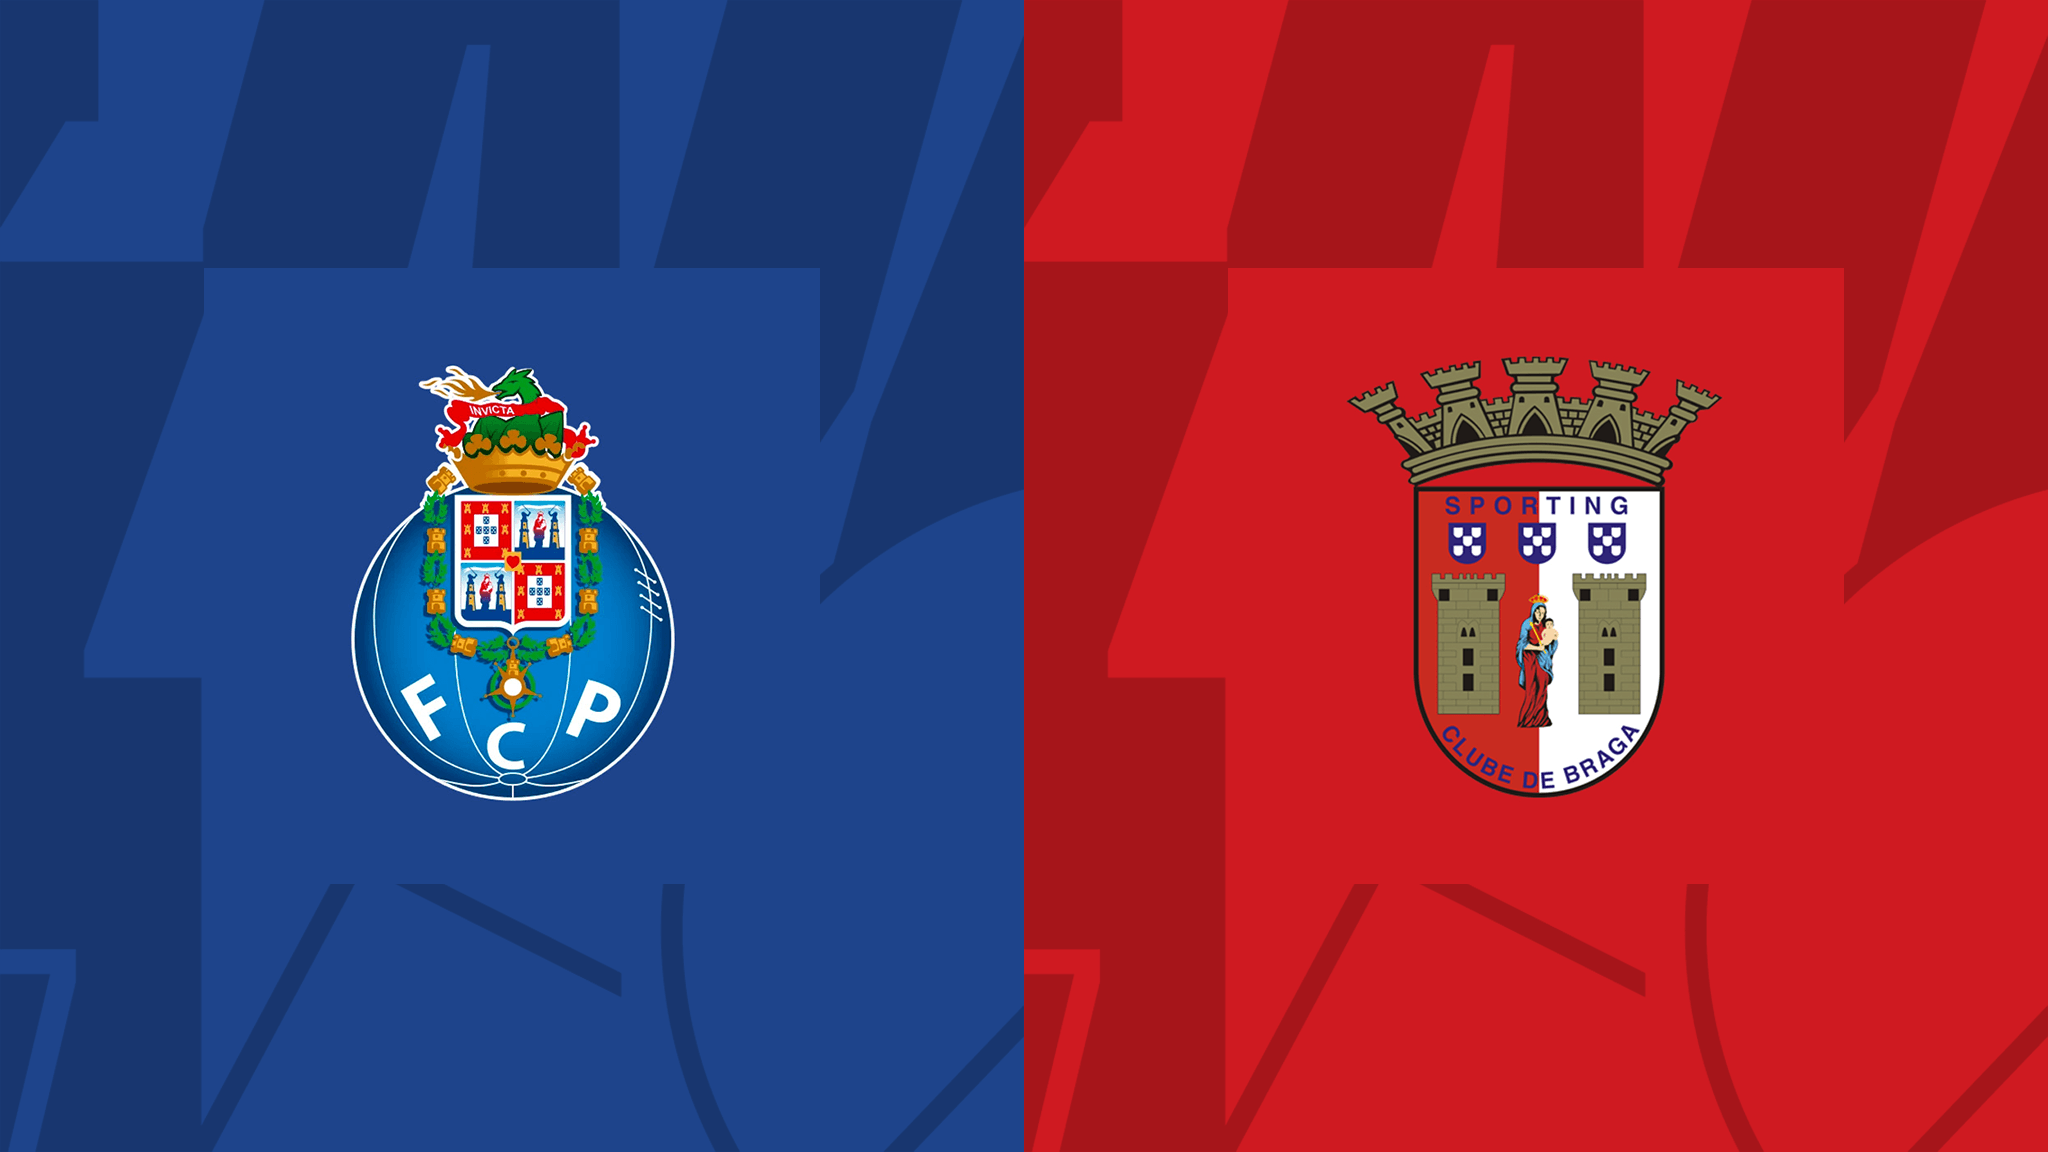  مشاهدة مباراة بورتو و سبورتينغ براغا بث مباشر 30/09/2022 Porto vs Sporting Braga